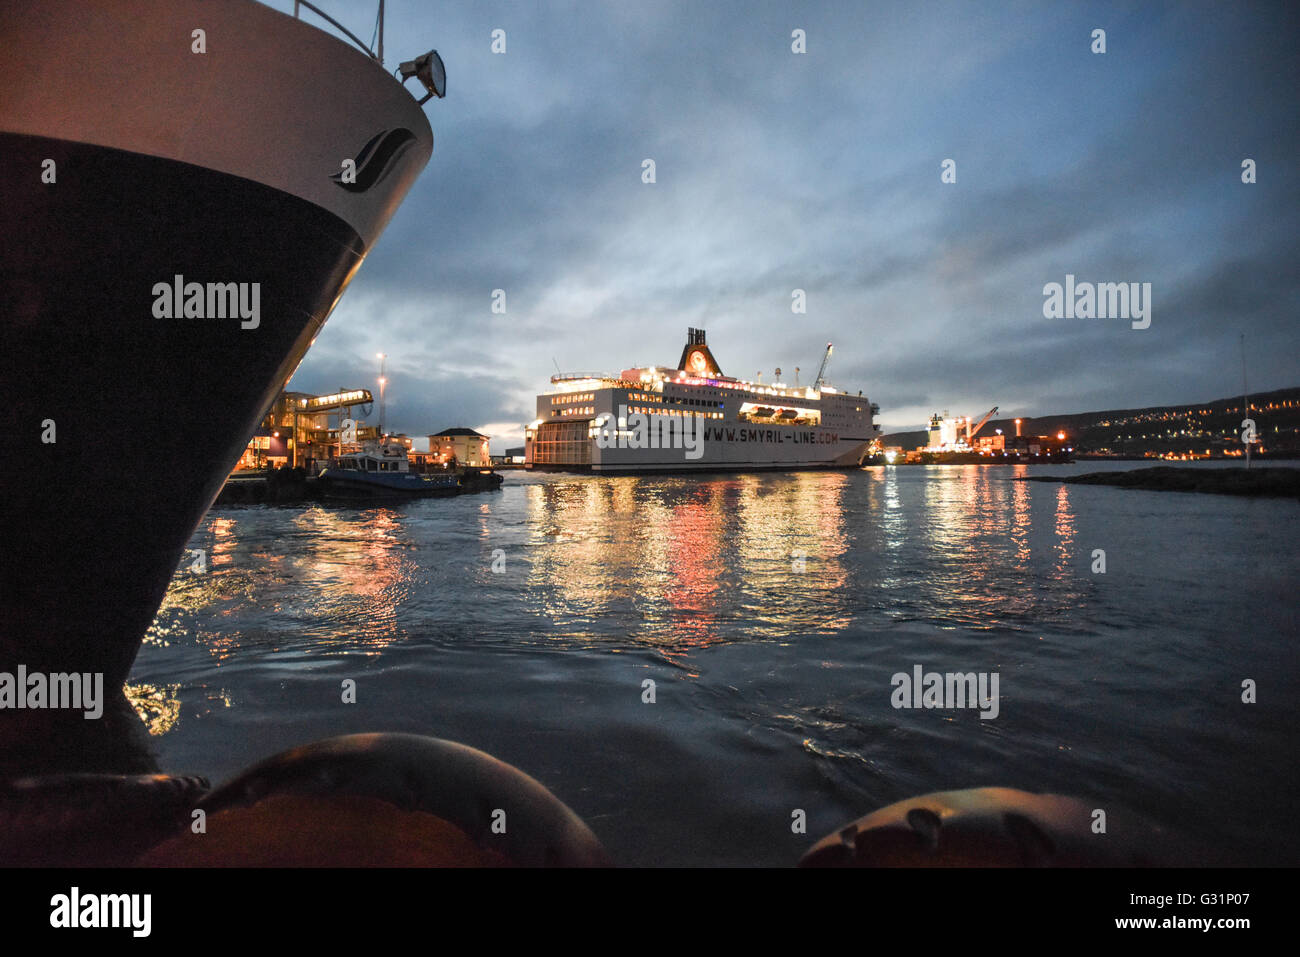 Thornhaven, Dänemark, Fähre Smyril Line im Hafen Stockfoto